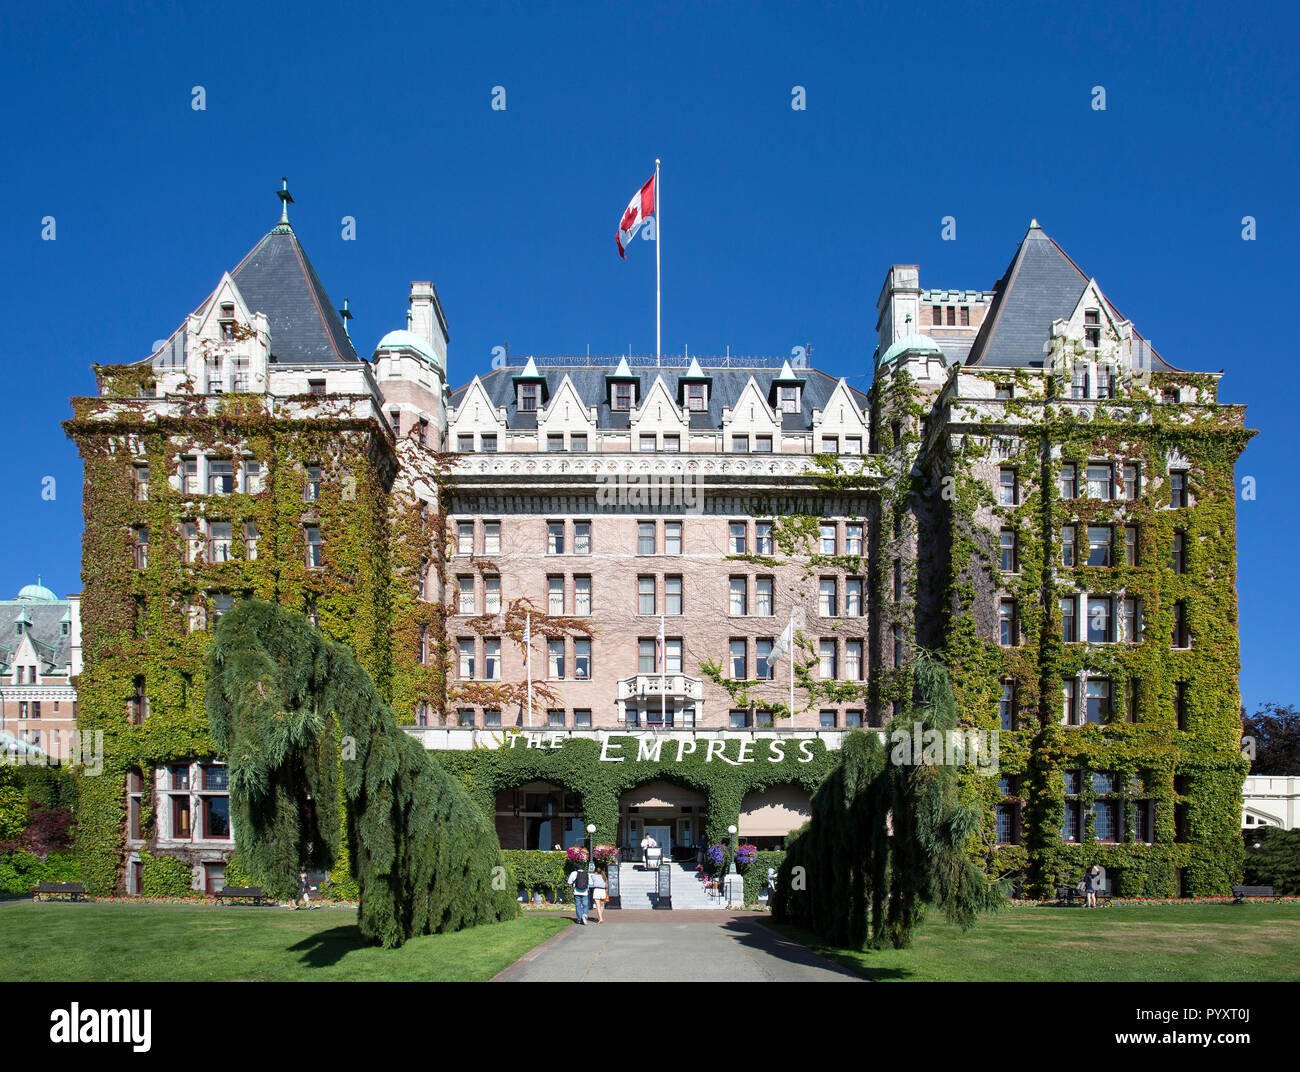 Nordamerika, Kanada, Britisch-Kolumbien, Vancouver Island, Victoria, das Empress Hotel war ein National Historic Site 1980 als Chateau-st bezeichnet Stockfoto